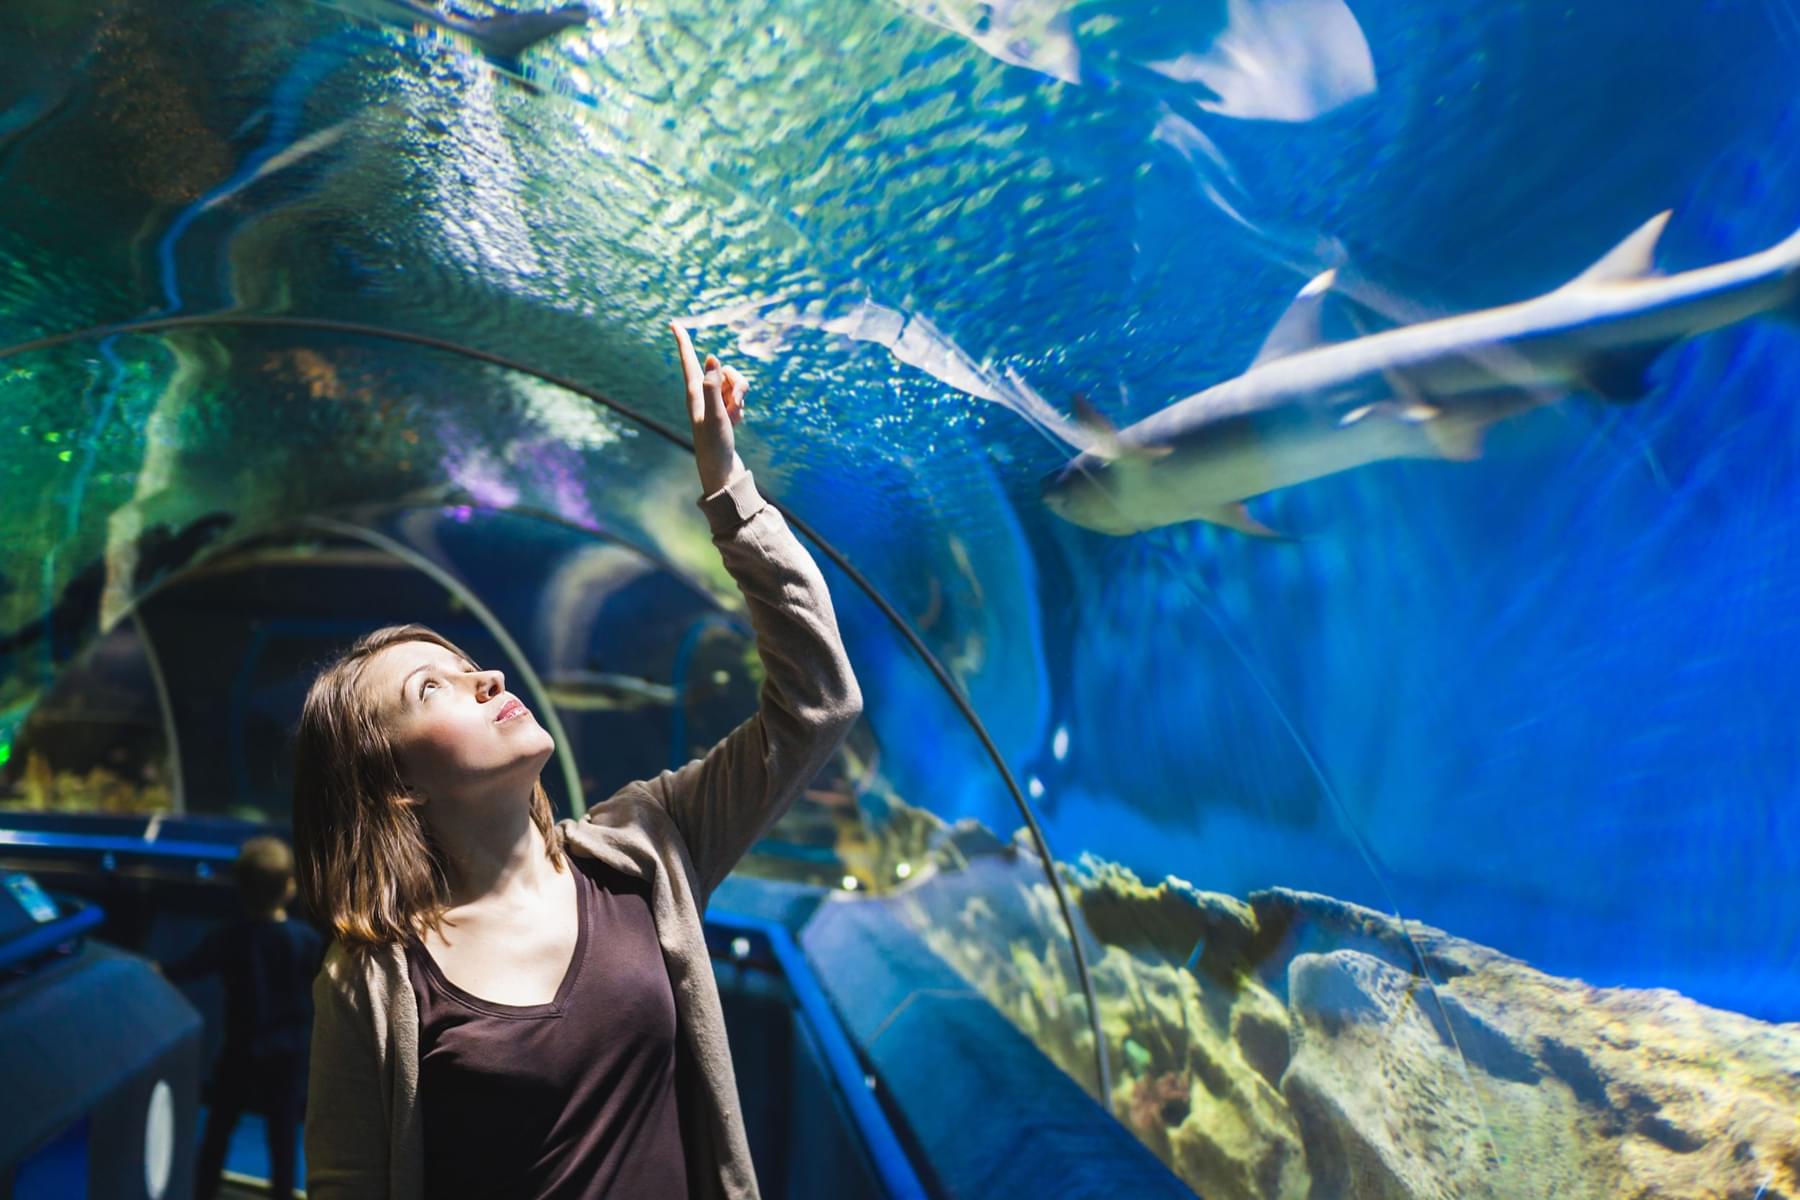 Dubai Aquarium and Zoo